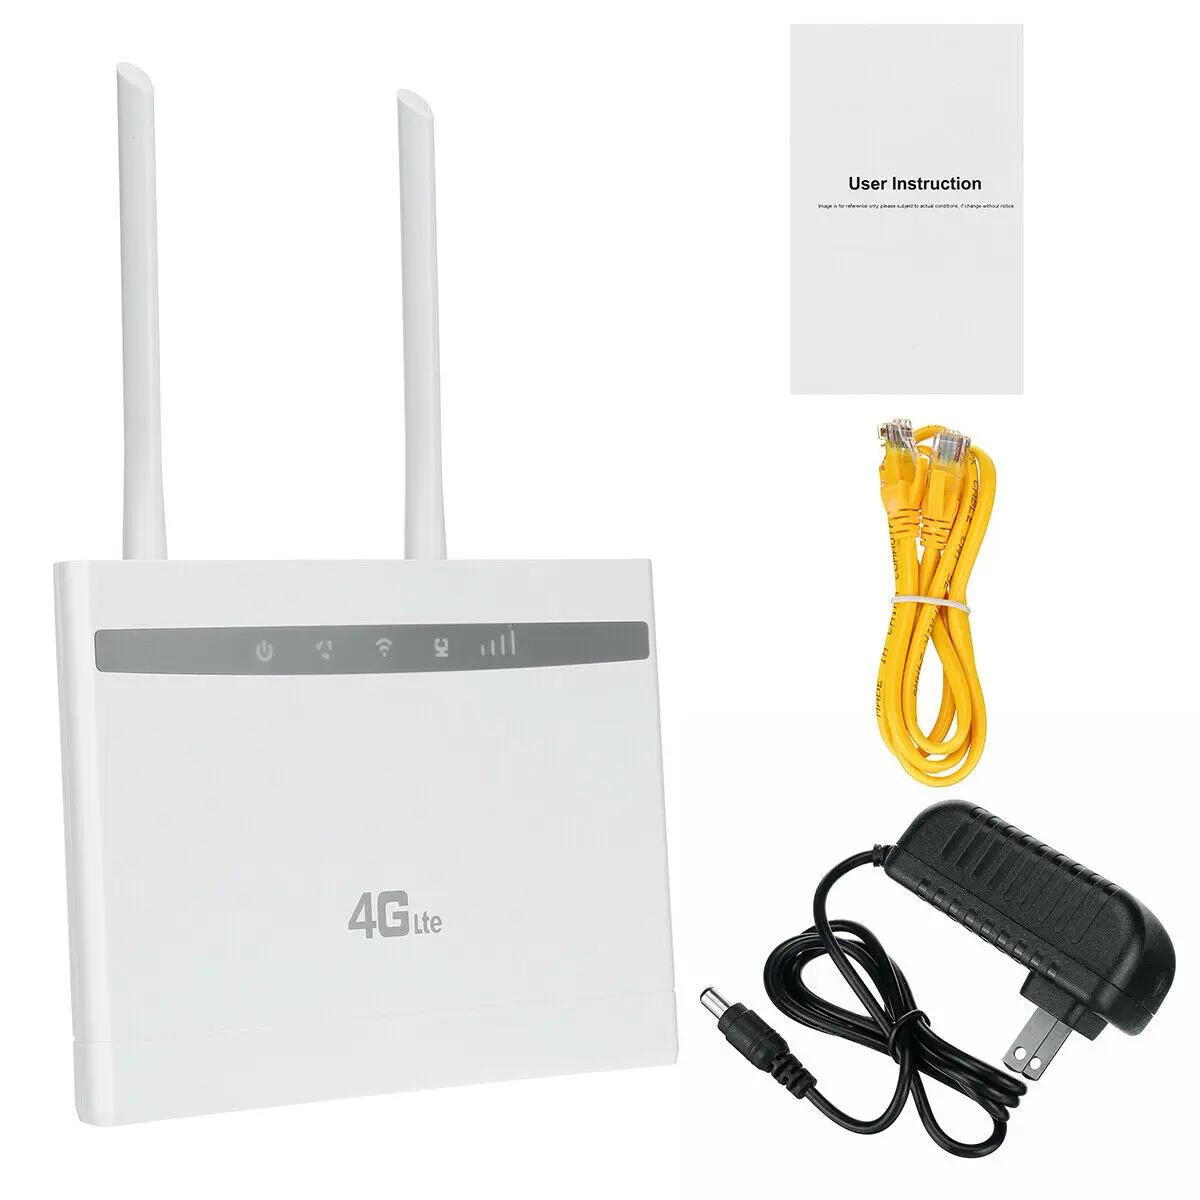 Wi-Fi-роутер CP100 с высоким коэффициентом усиления и слотом для sim-карты